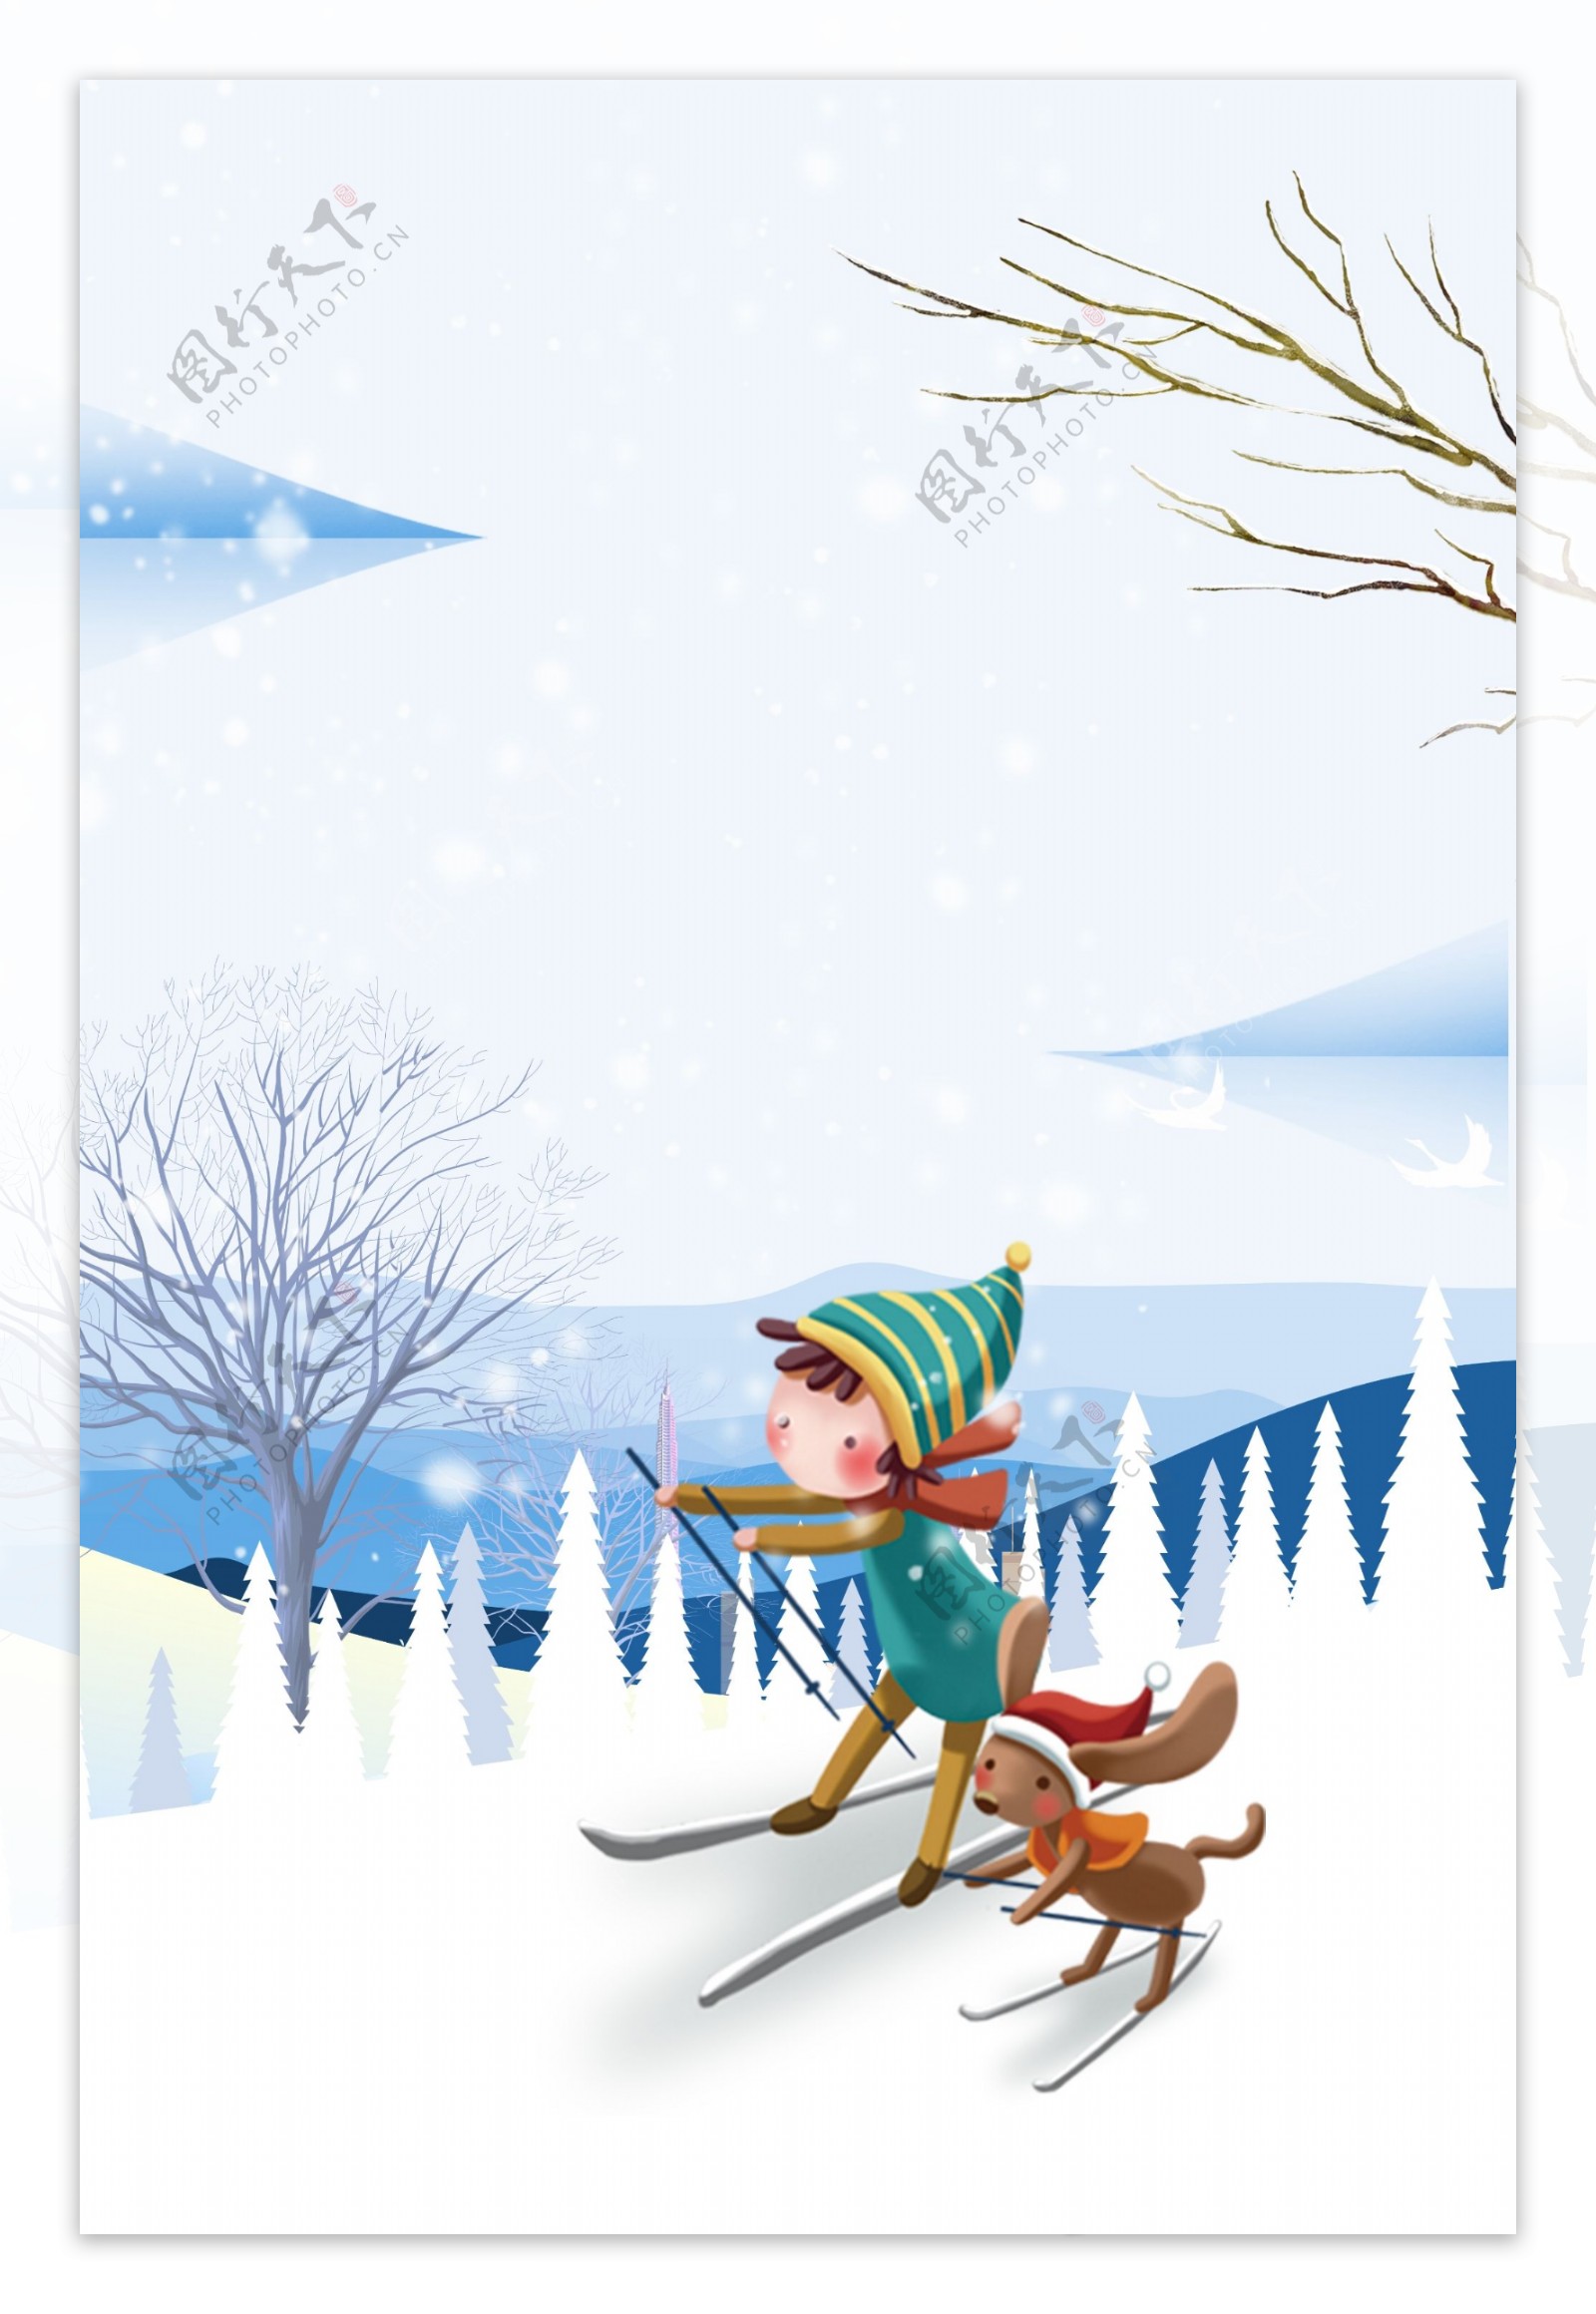 冬季滑雪的儿童与狗背景设计